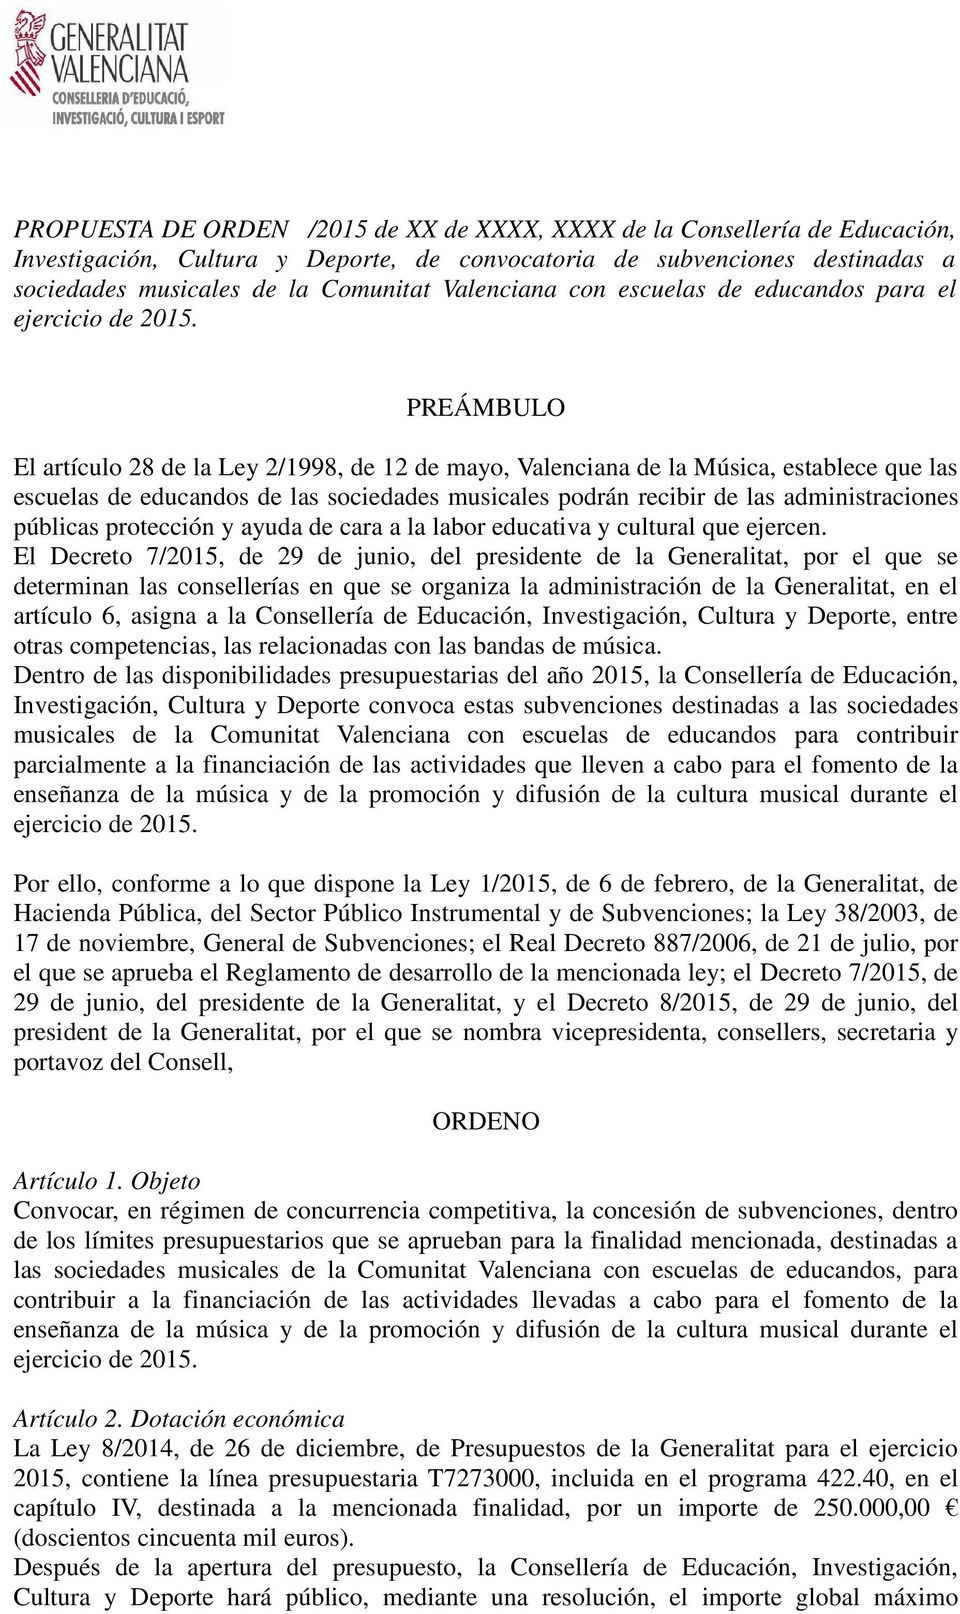 PREÁMBULO El artículo 28 de la Ley 2/1998, de 12 de mayo, Valenciana de la Música, establece que las escuelas de educandos de las sociedades musicales podrán recibir de las administraciones públicas